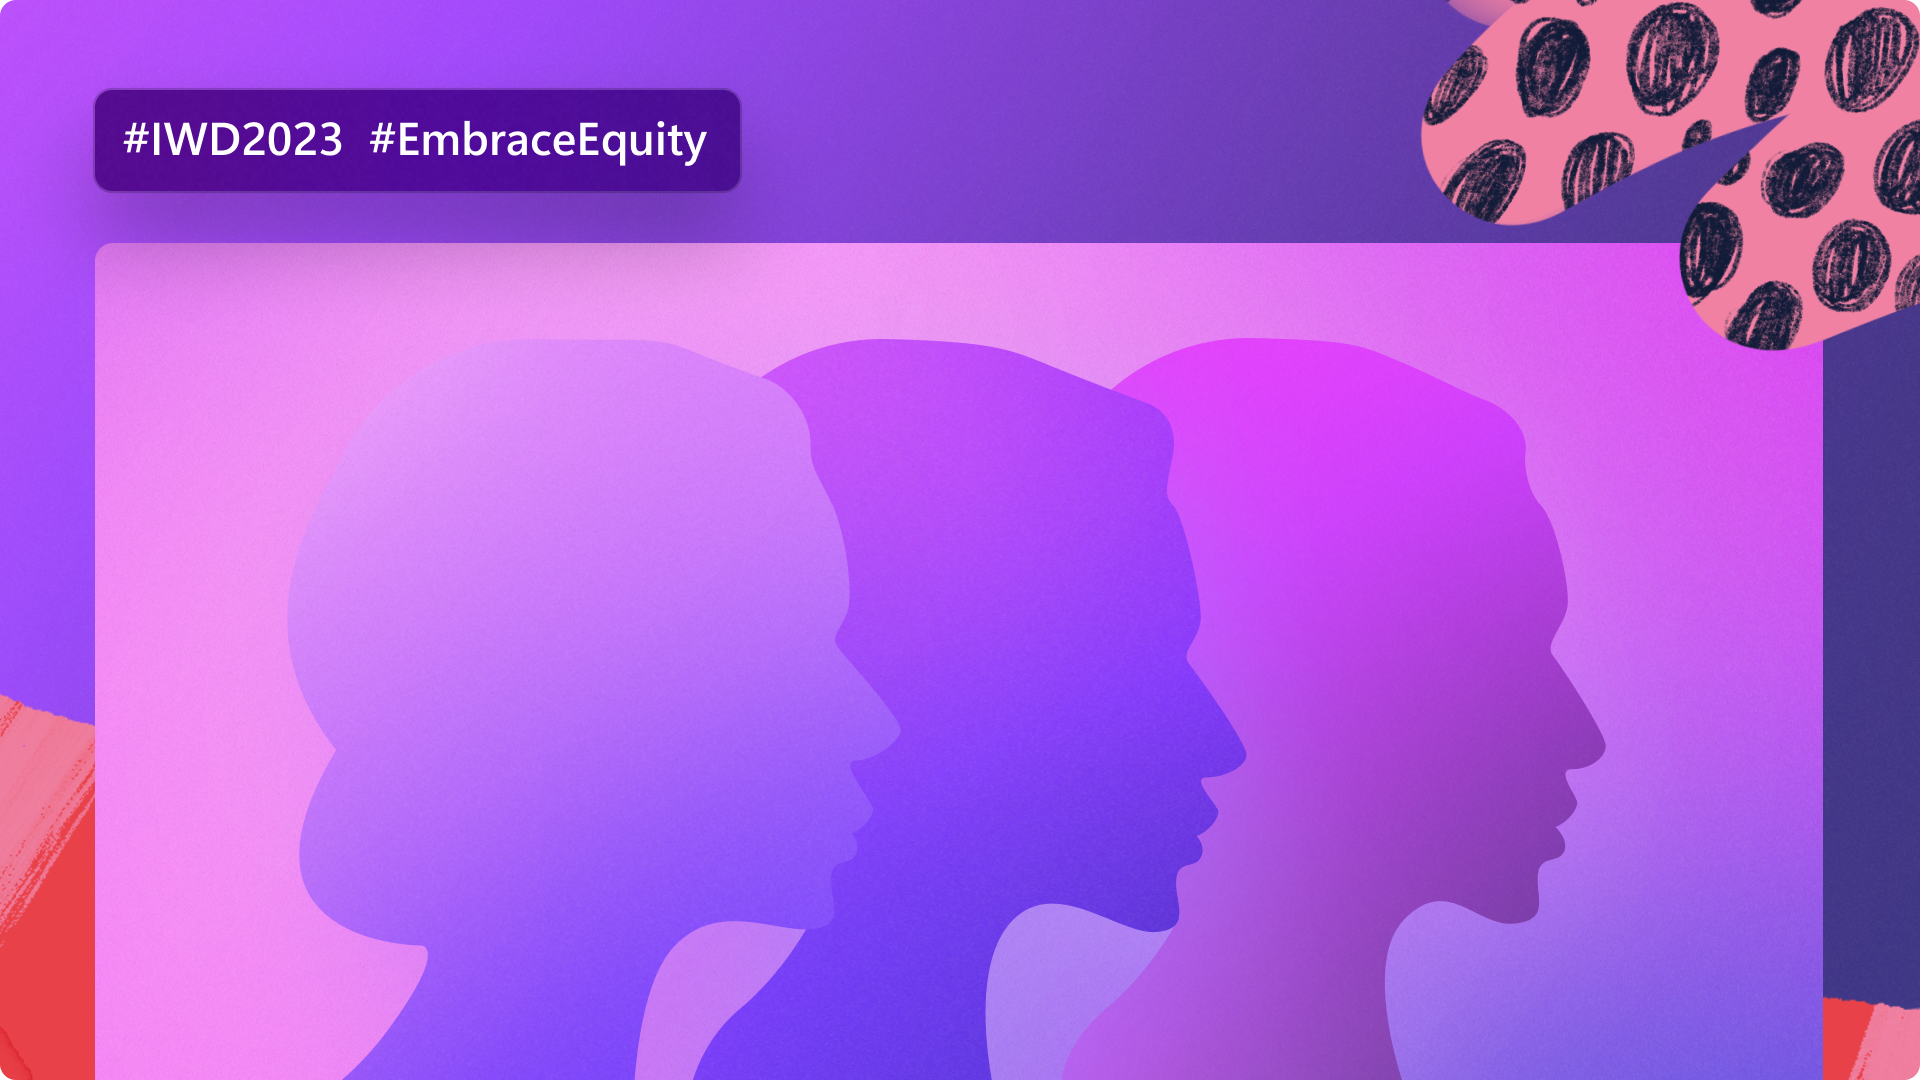 Ngày Quốc Tế Phụ Nữ năm nay mang đến những thông điệp lớn lao về tình yêu, sự bình đẳng và sự đoàn kết. Hãy khám phá bức tranh đầy màu sắc của hình ảnh liên quan và cùng nhau ủng hộ những quyết tâm đáng quý này.